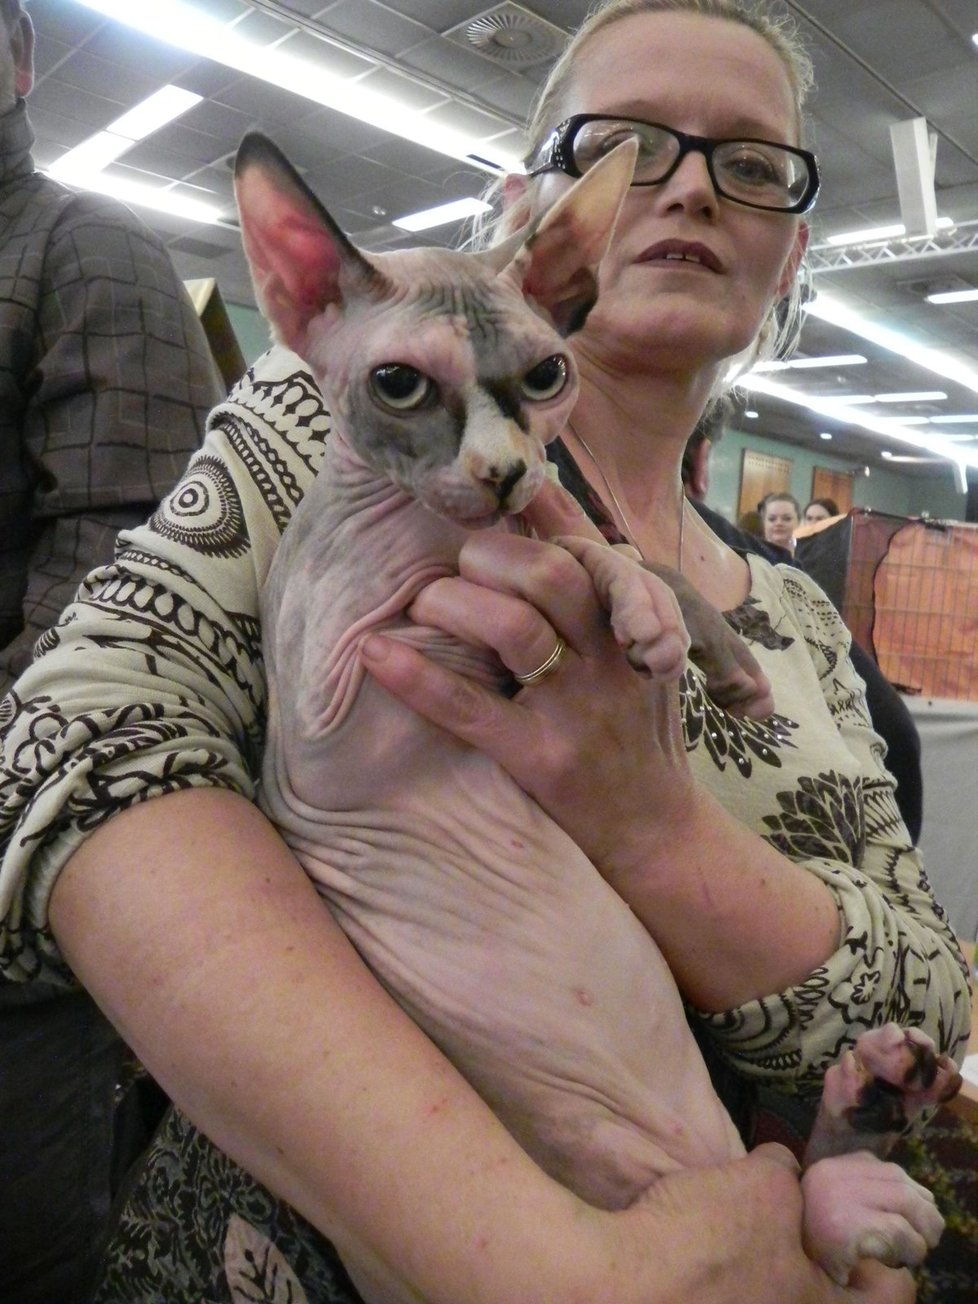 Heidy de Romanof ze známého plemene Sphynx, kočka bez srsti. V 10 měsících měla na kočičích soutěžích premiéru, prozradila chovatelka Lada Hrůzová.